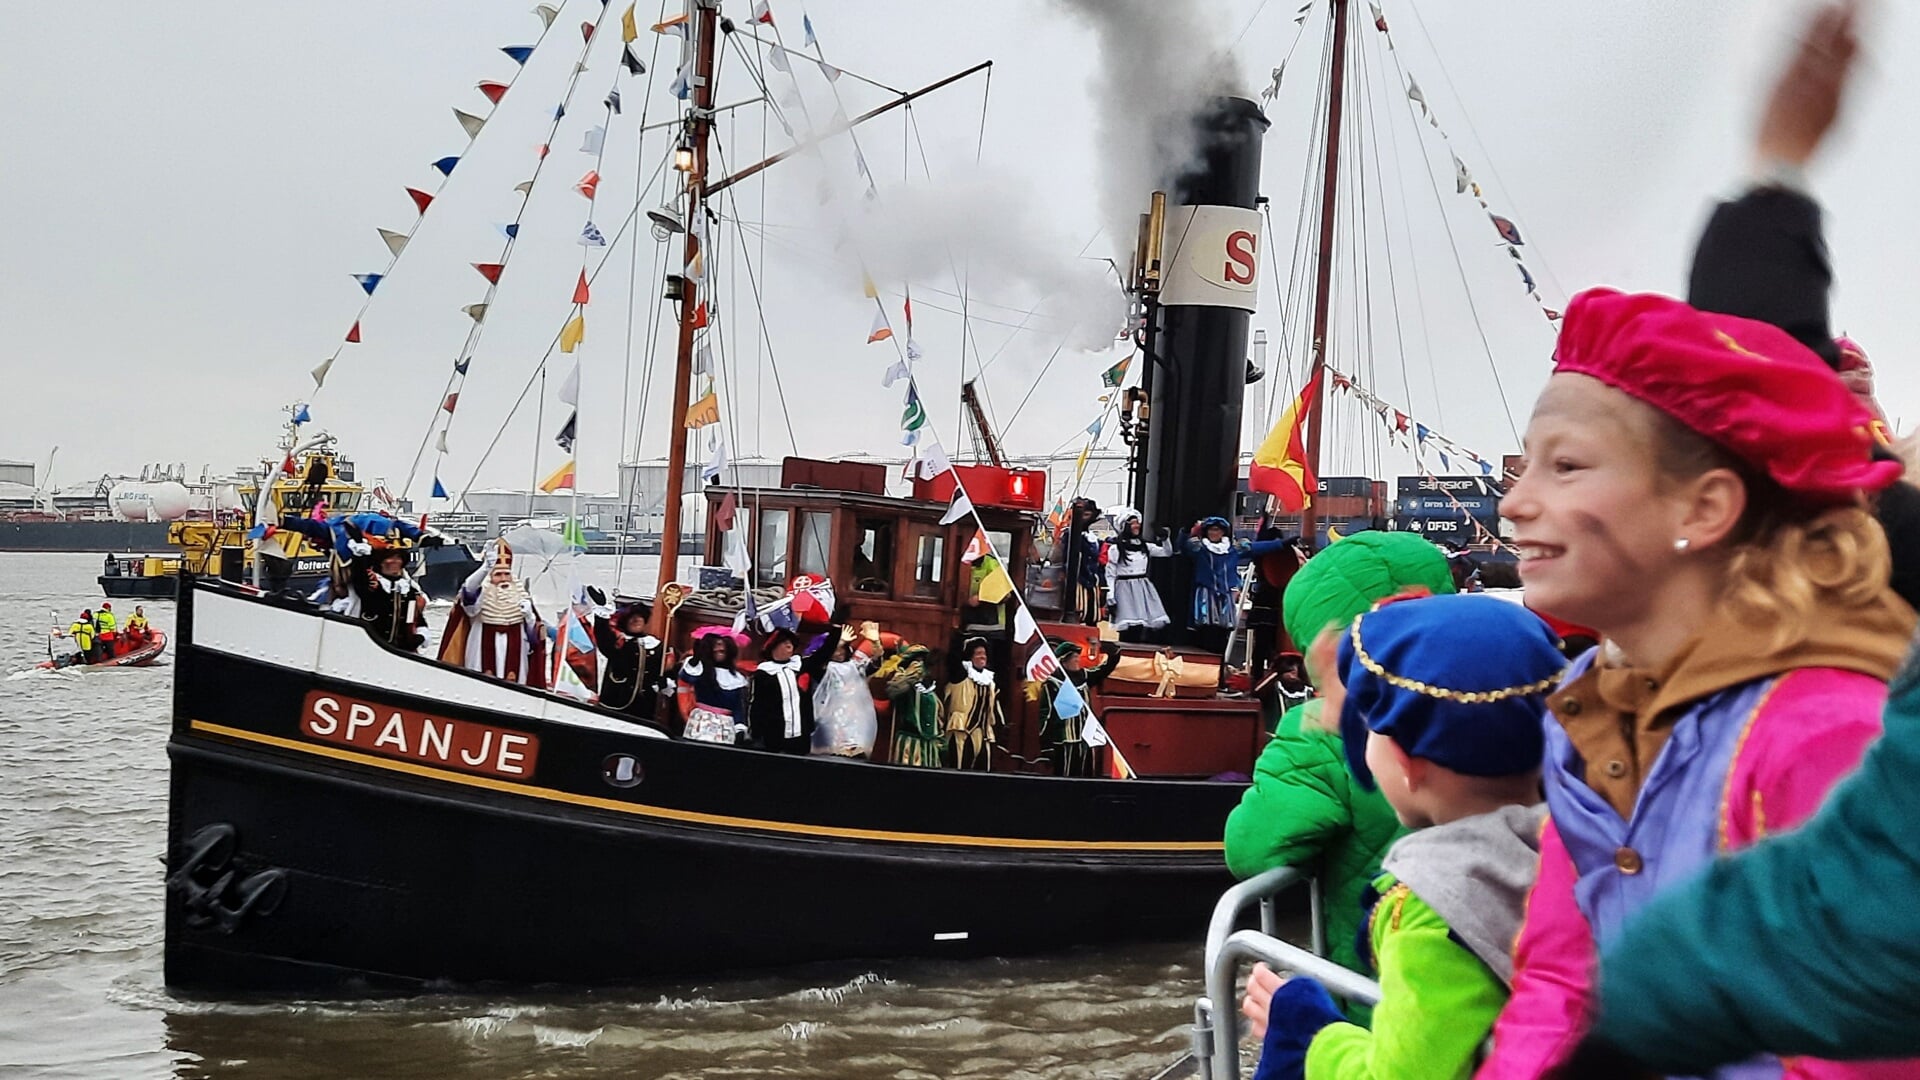 De stoomboot Spanje draait met Sinterklaas op de voorsteven de Buitenhaven in om even later onder grote belangstelling af te meren in de Oude Haven naast de Visbank.